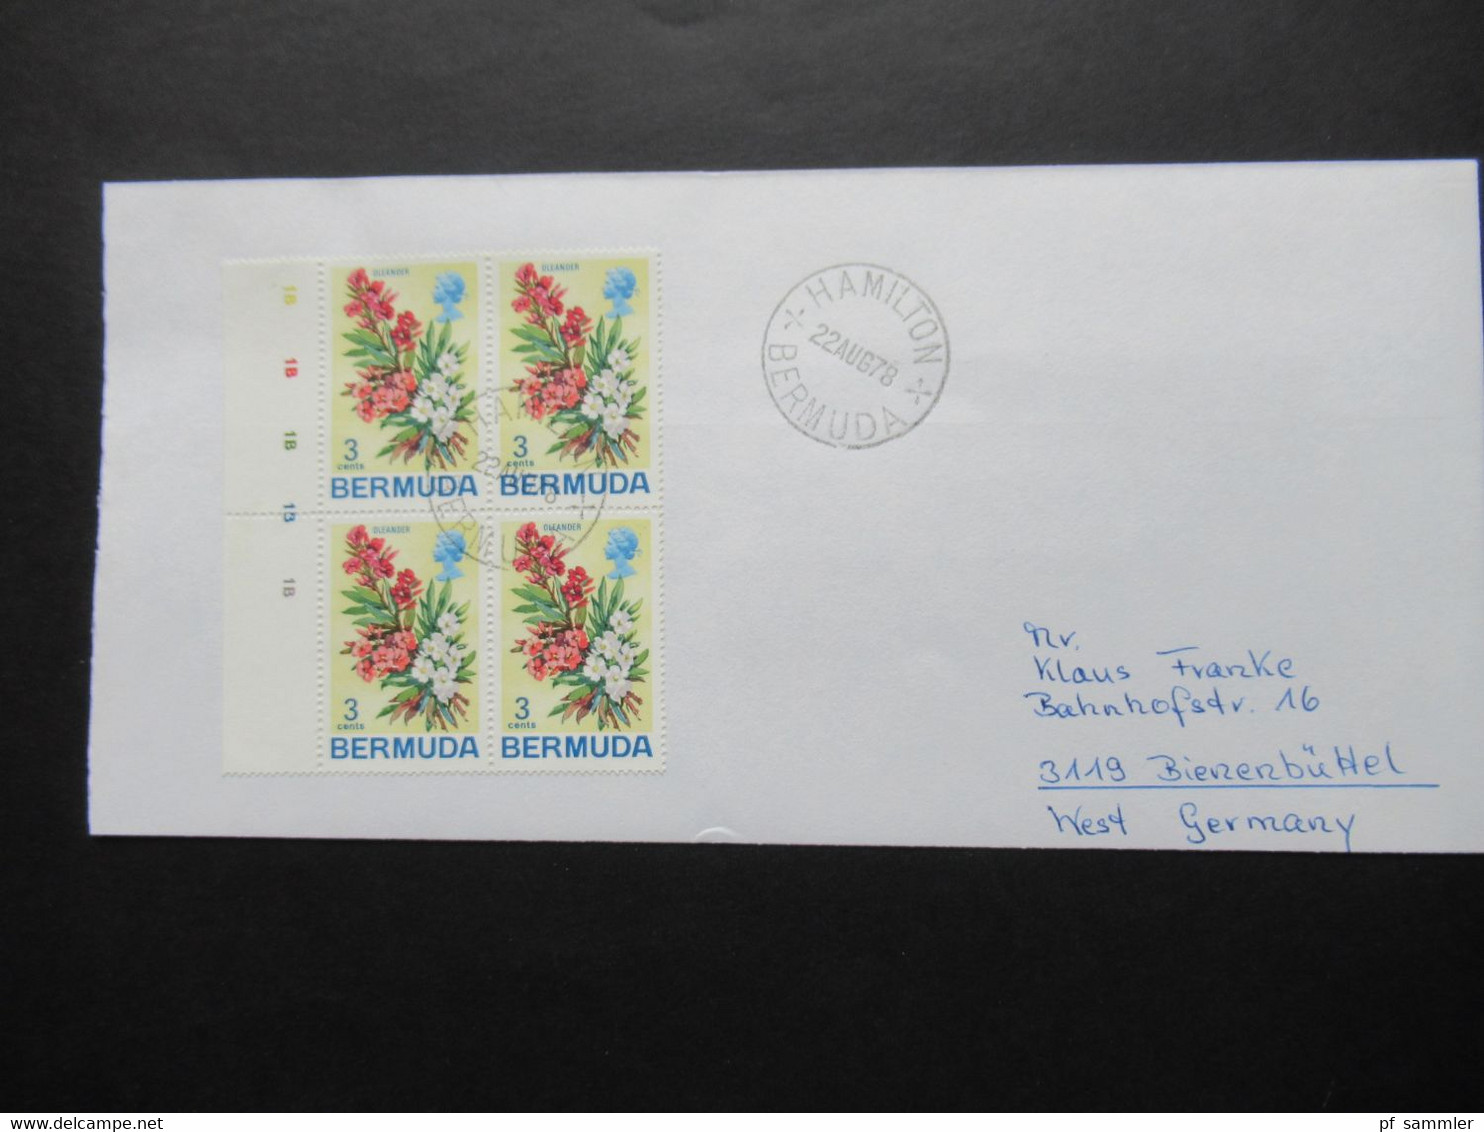 Bermuda 1978 Vögel u. Amphibien / Blumen / Segelschiffe Motivmarken als 4er Blocks Randstücke auch Dollar Werte!!